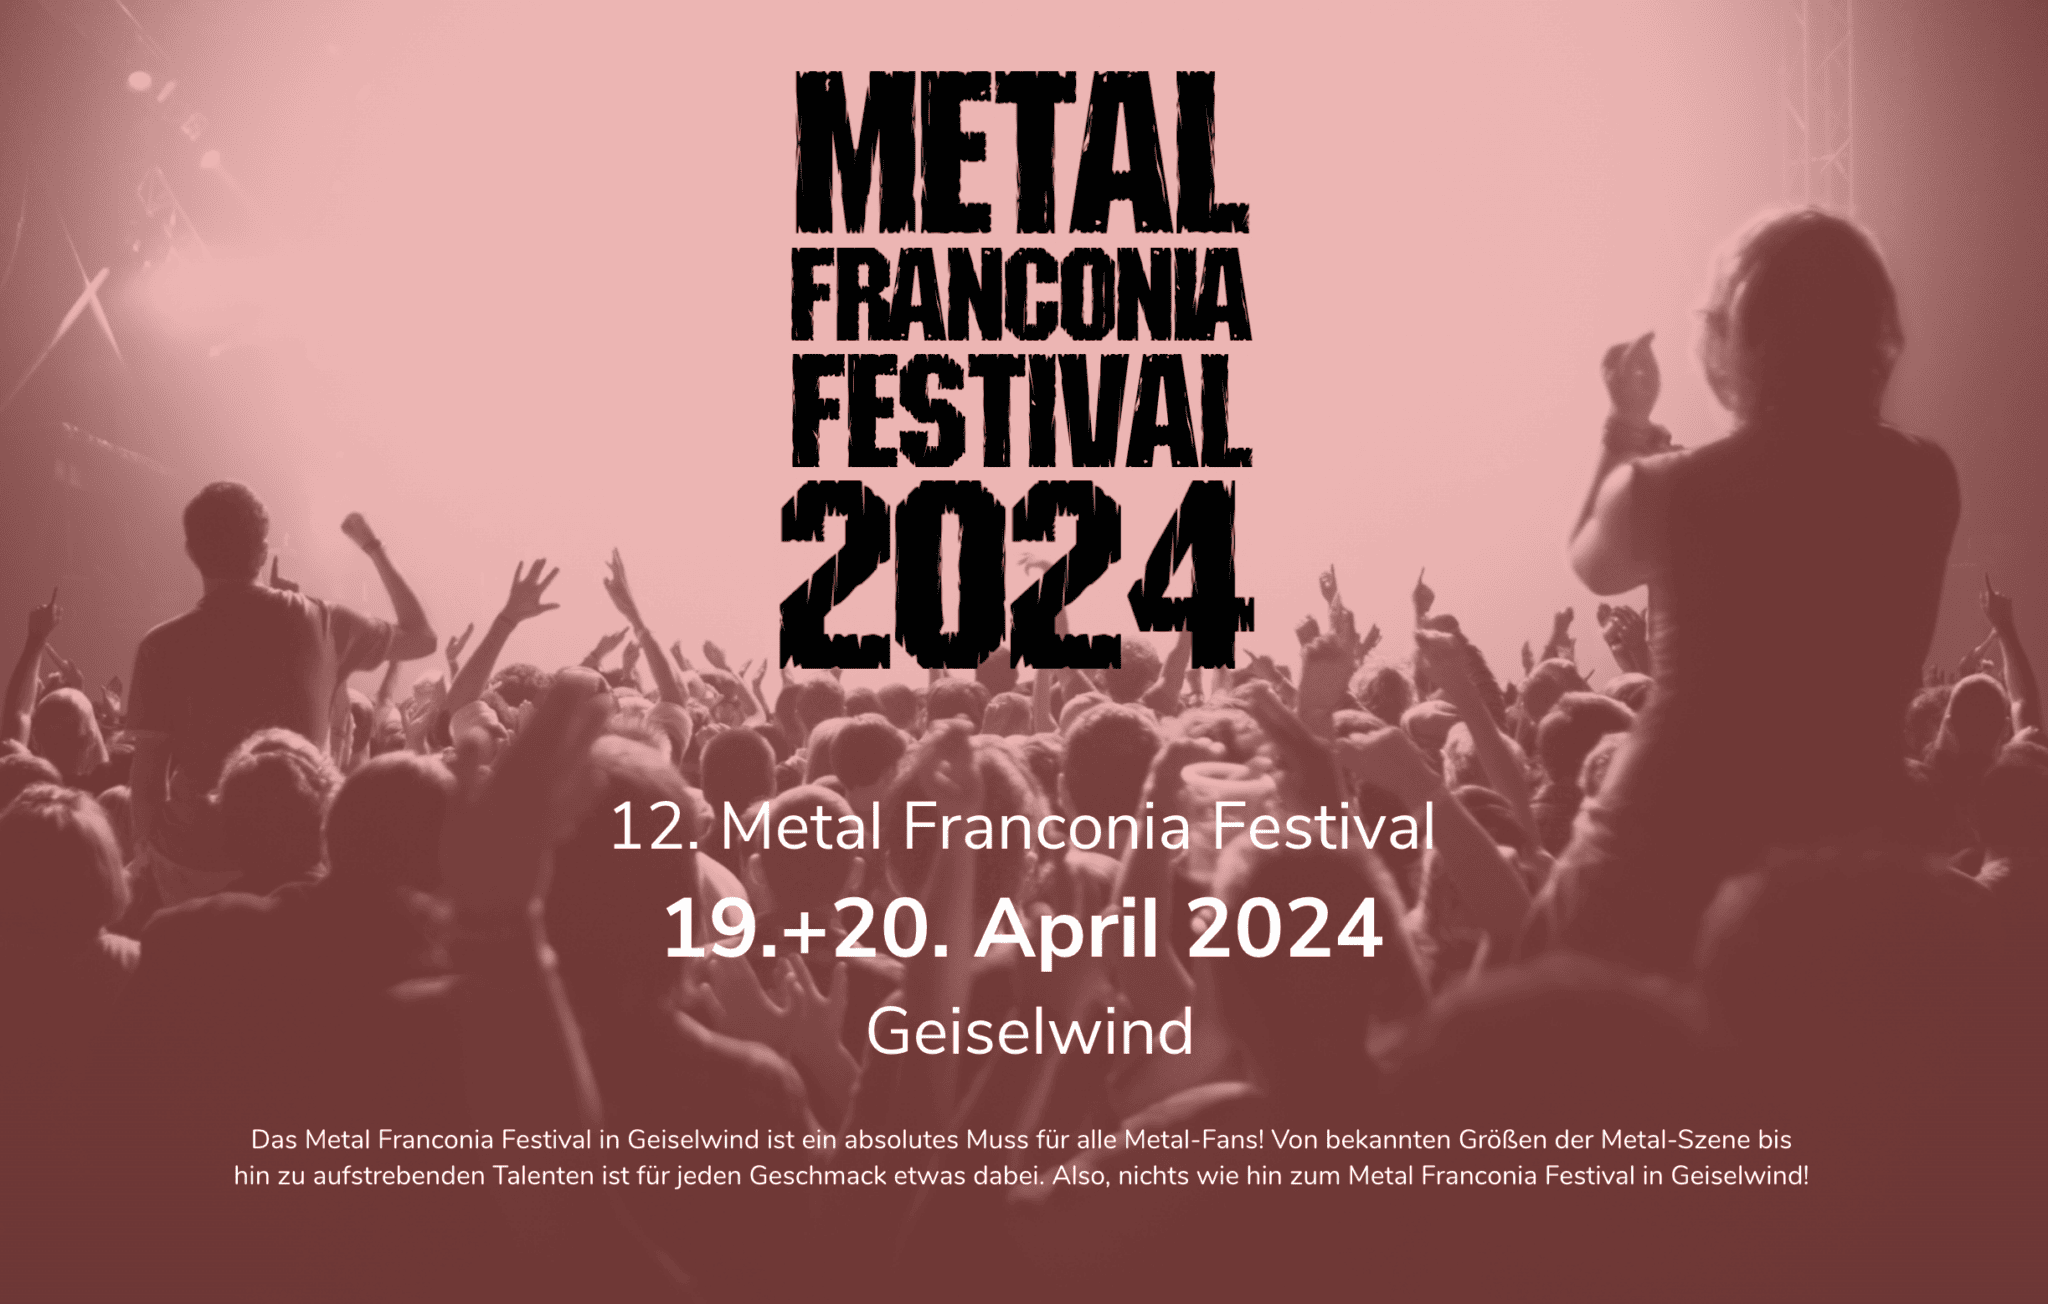 Metal Franconia Festival 2024 2048x1304 